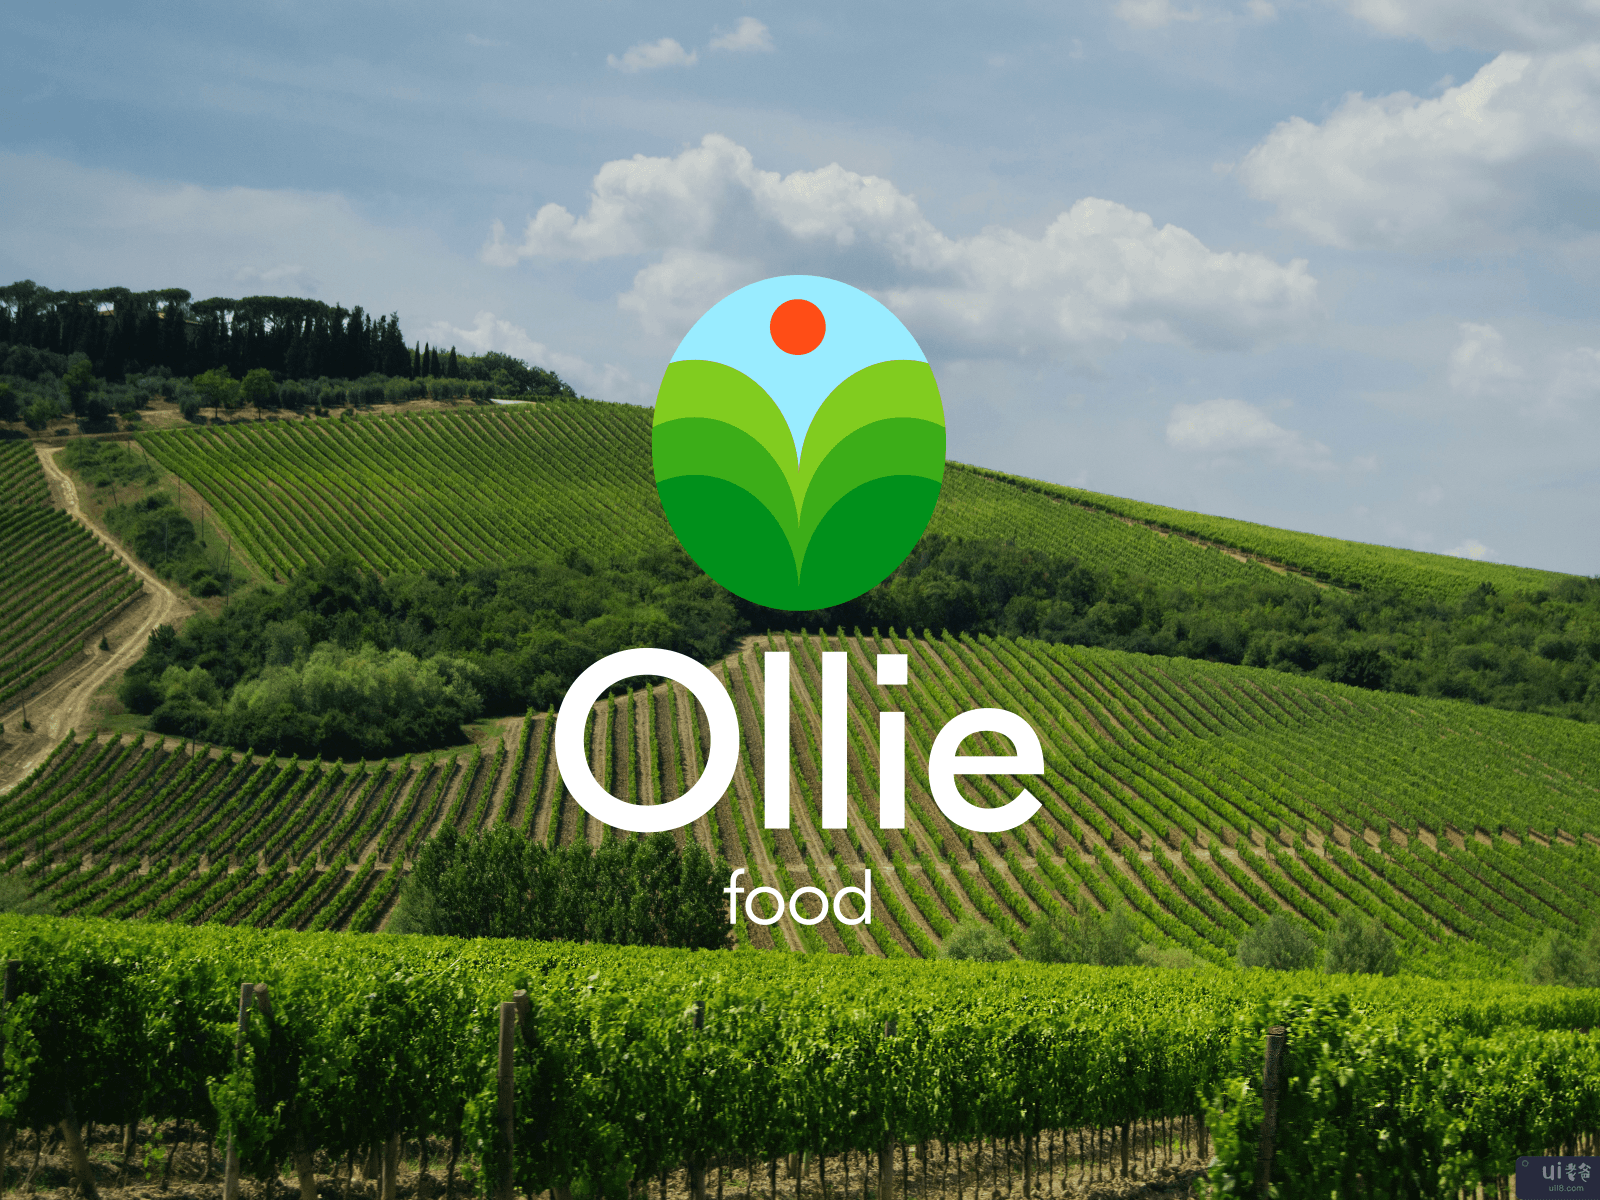 Ollie - 农场食品的标志设计(Ollie - Logo Design for Farm Food)插图1